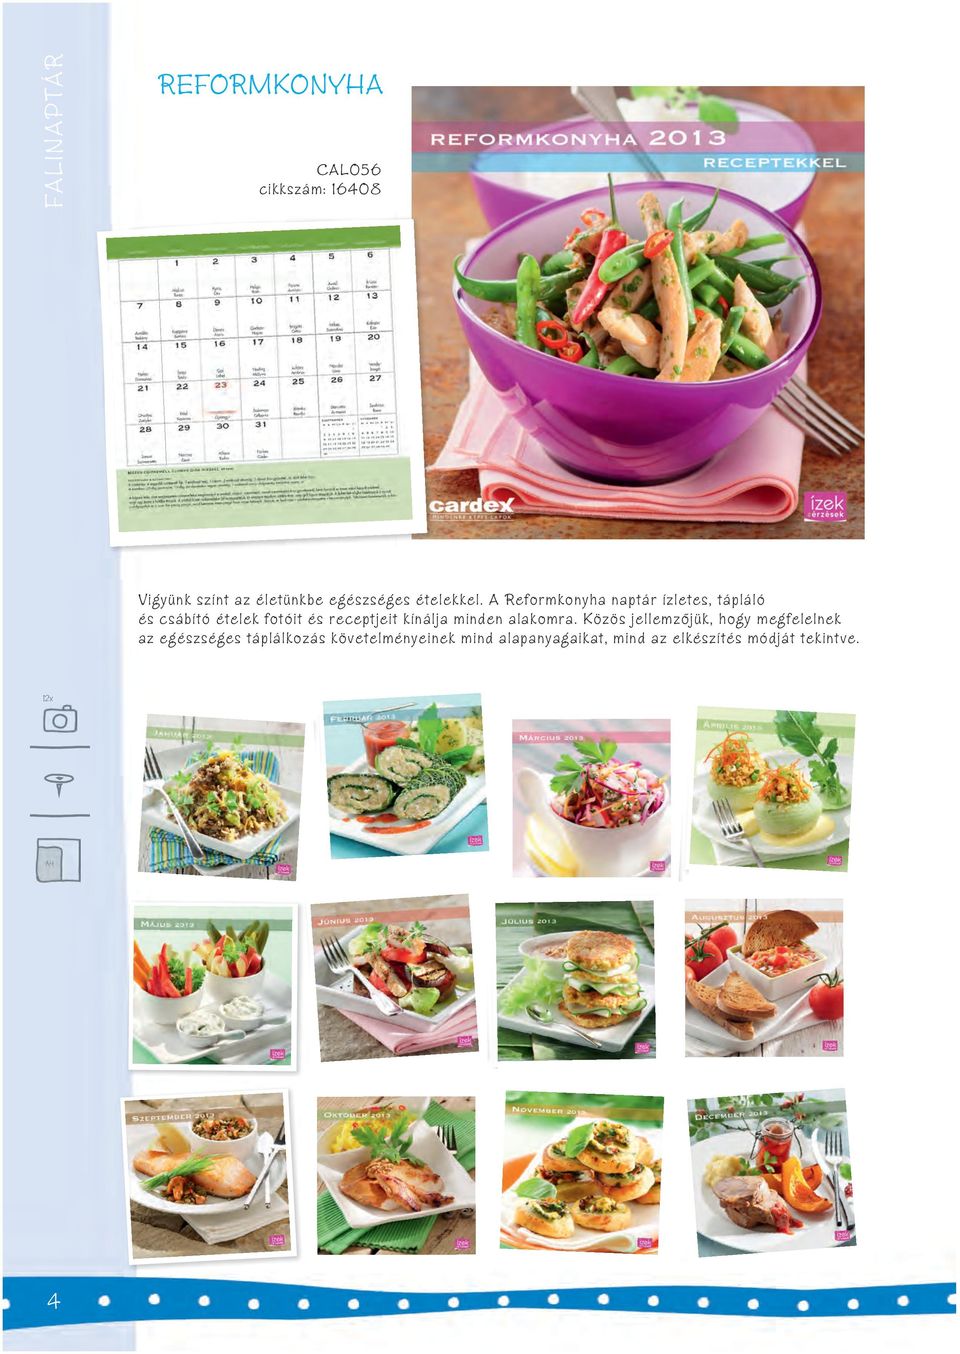 A Reformkonyha naptár ízletes, tápláló és csábító ételek fotóit és receptjeit